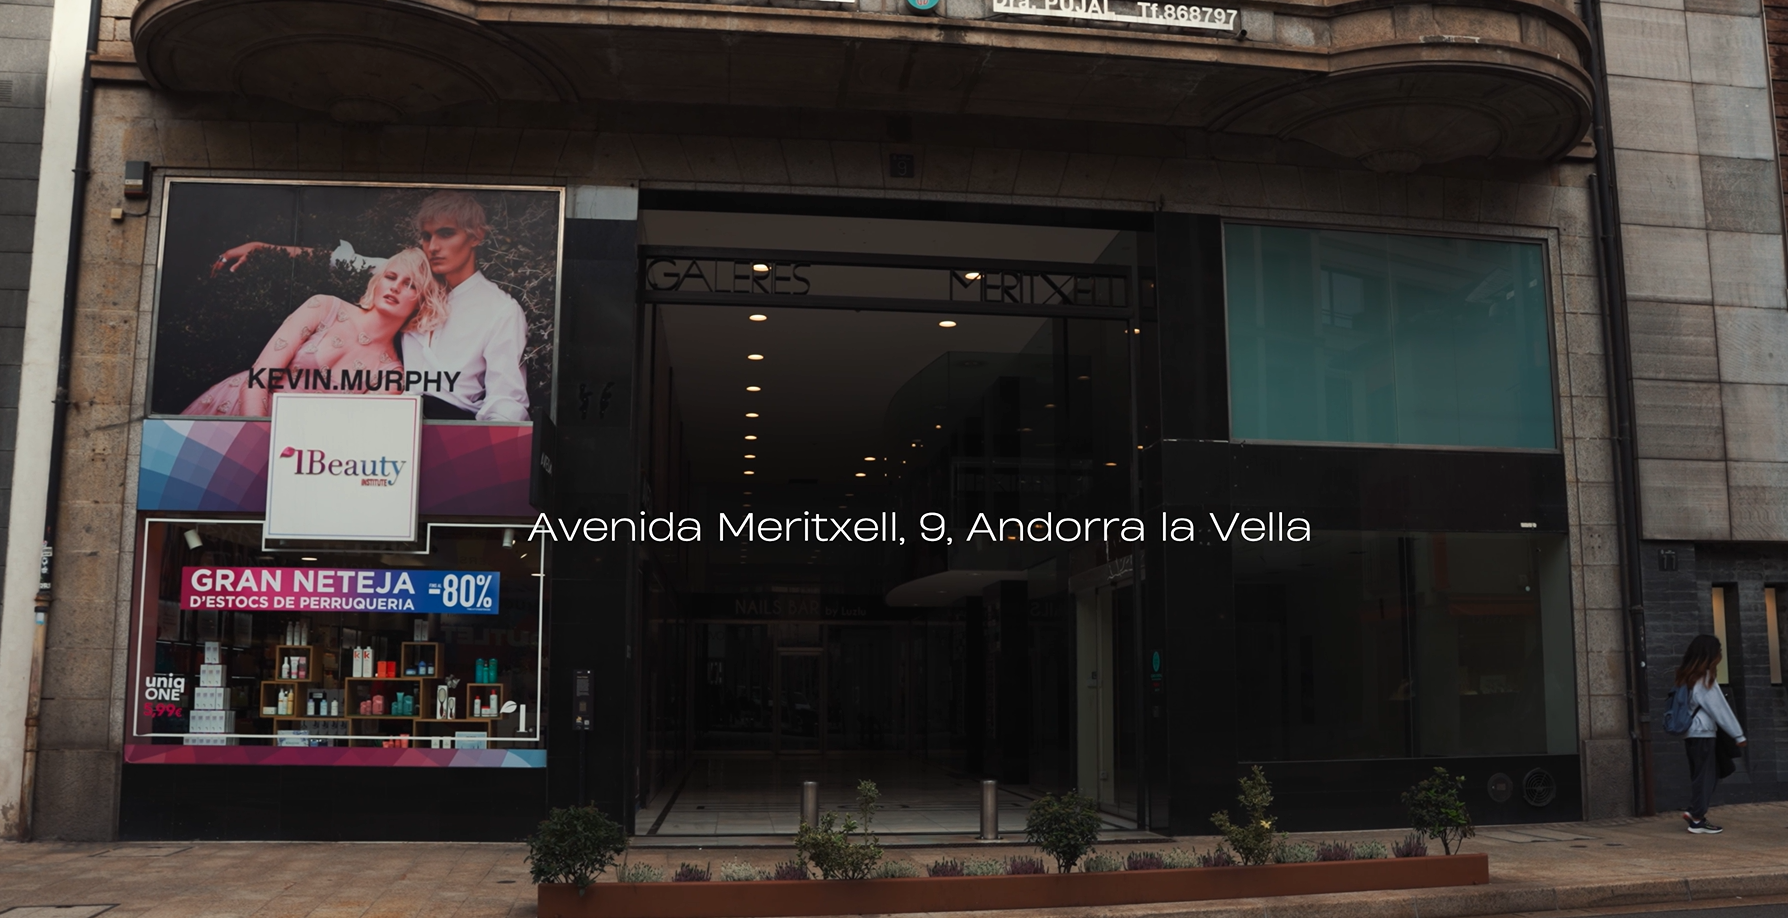 Superlative Watches y su exclusiva tienda de relojes Rolex en Andorra